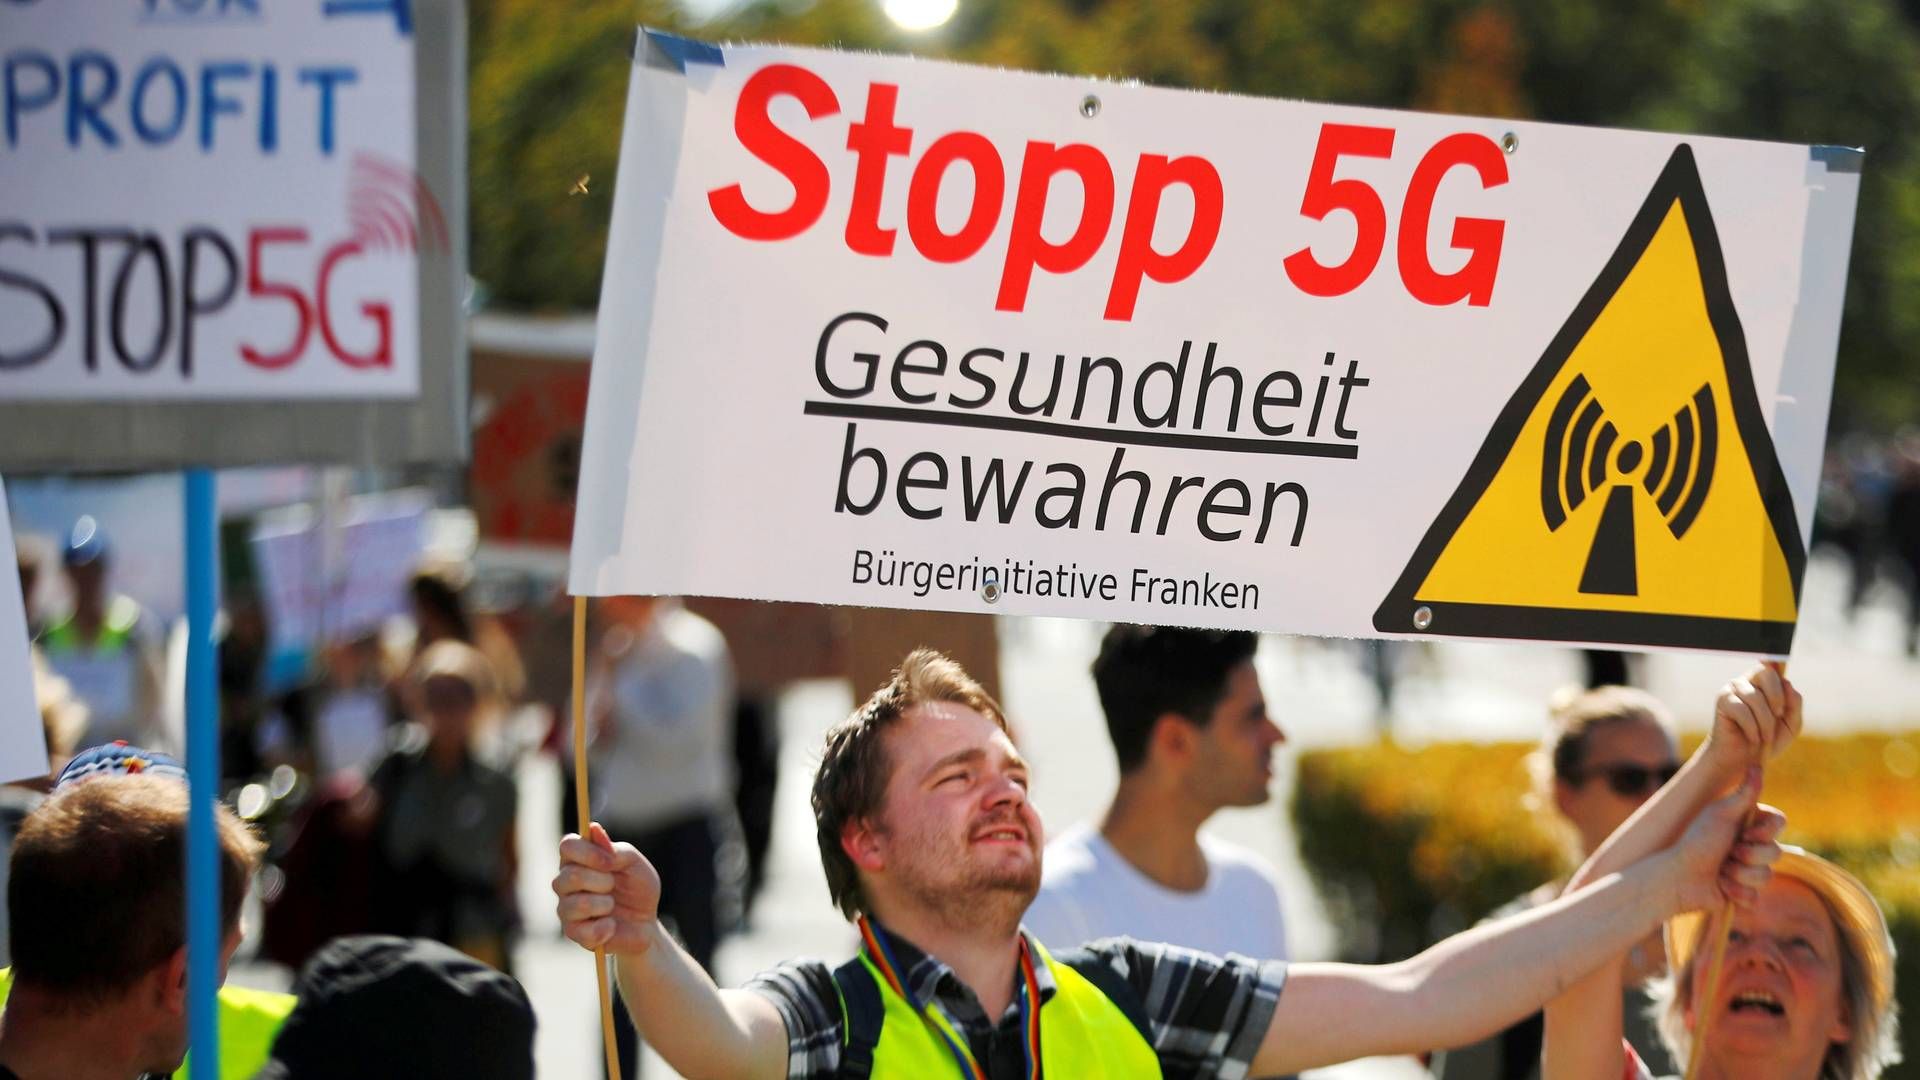 Mange steder i EU – her i Berlin – har borgere demonstreret mod 5G-teknologien. | Foto: HANNIBAL HANSCHKE/REUTERS / X02197